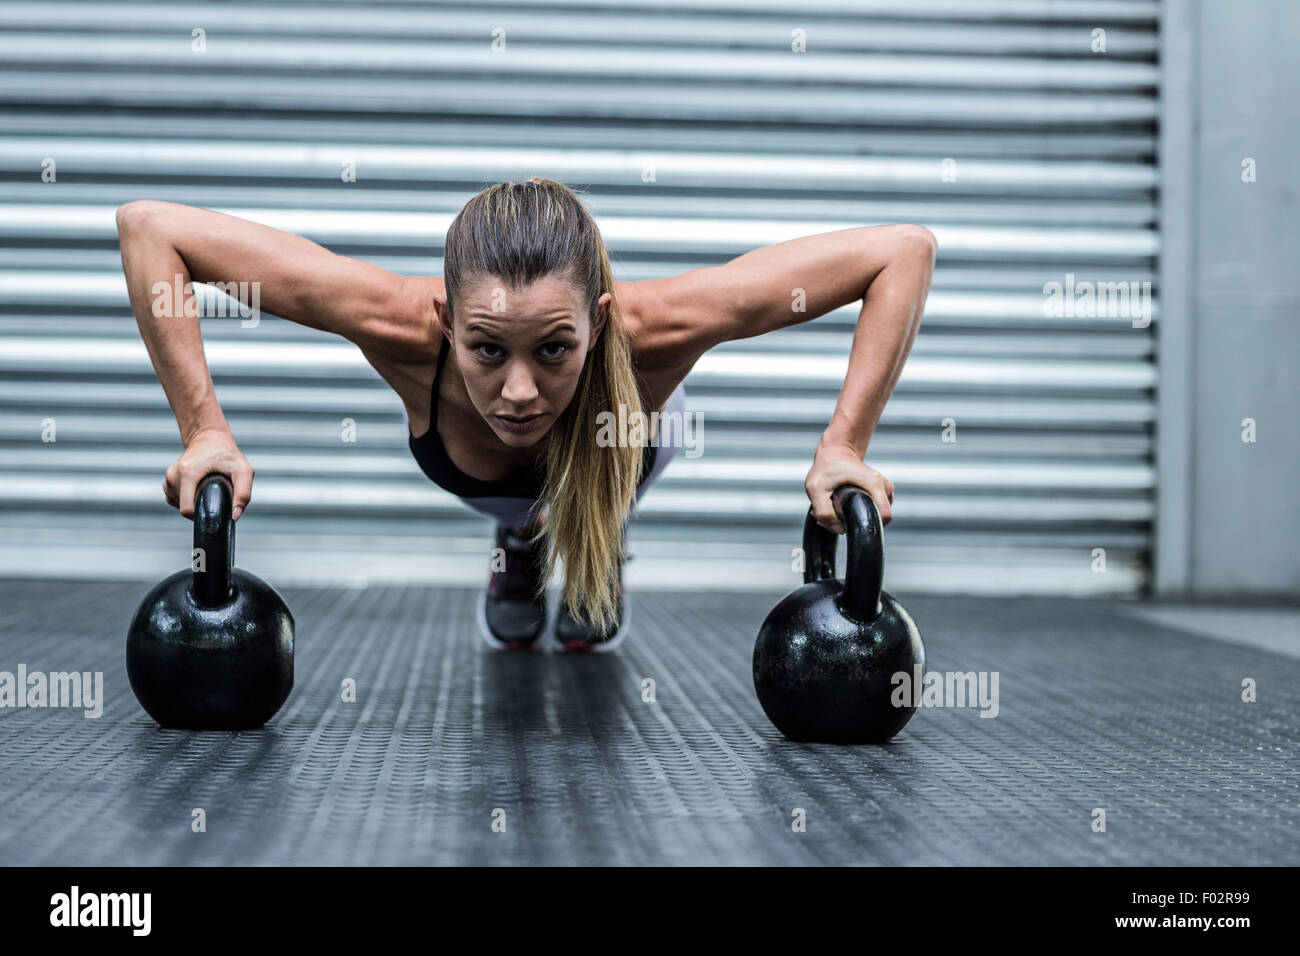 Muskulöse Frau tun Liegestütze mit kettlebells Stockfoto